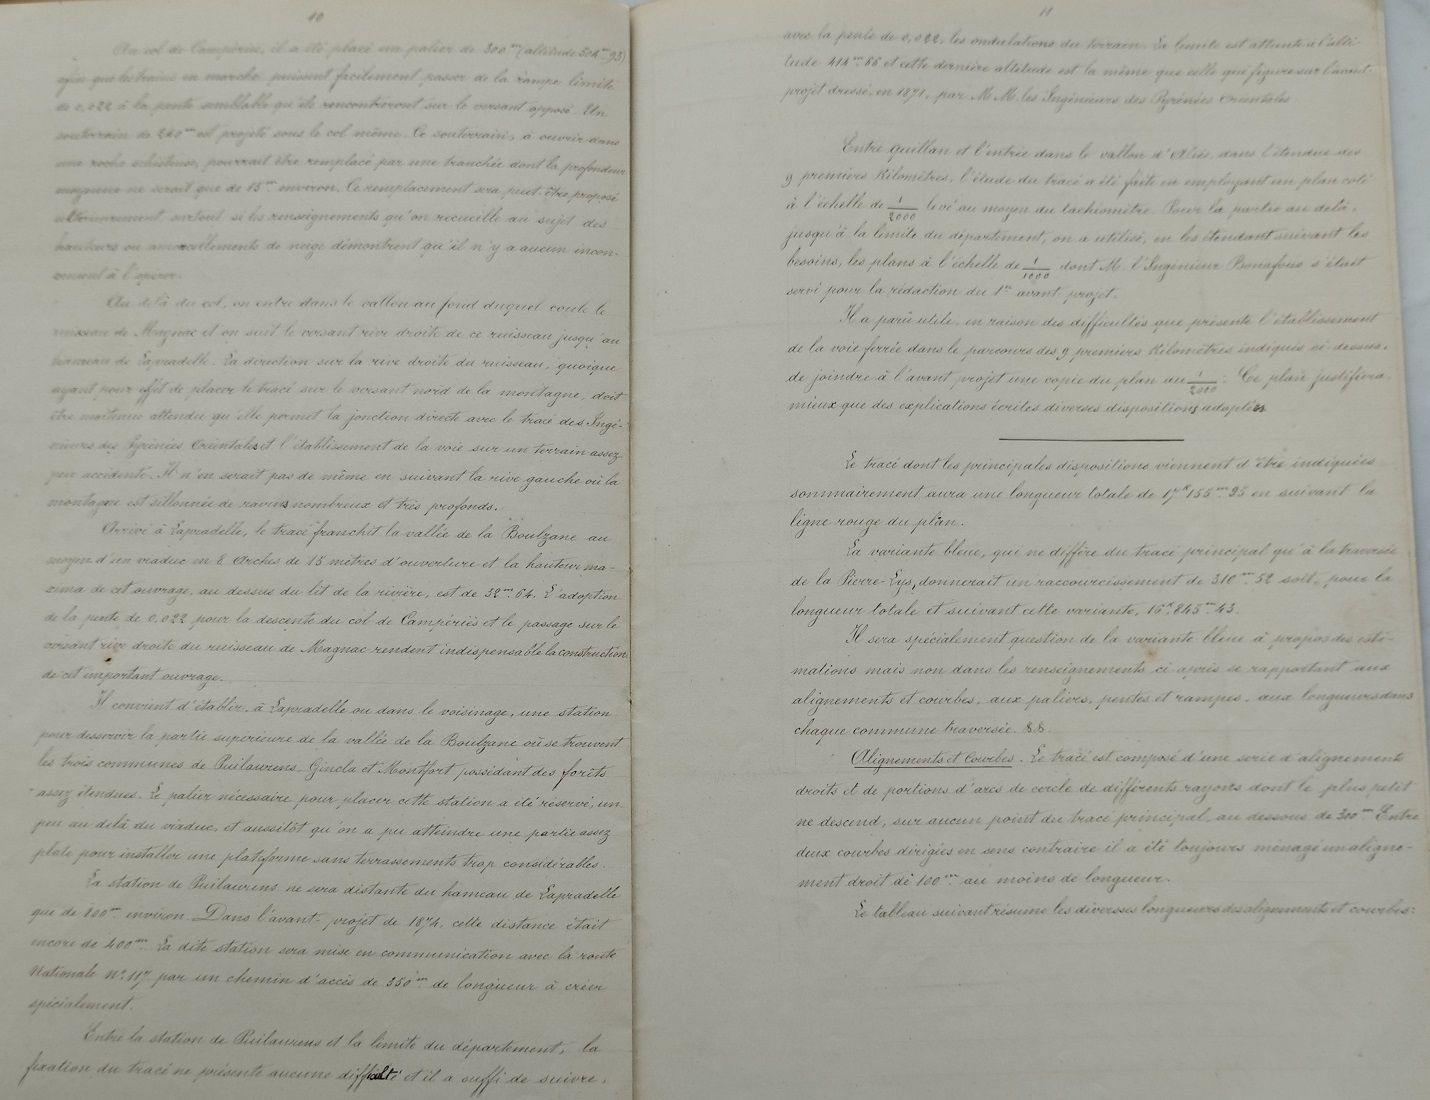 30 décembre 1878 - mémoire accompagnant les plans - copie